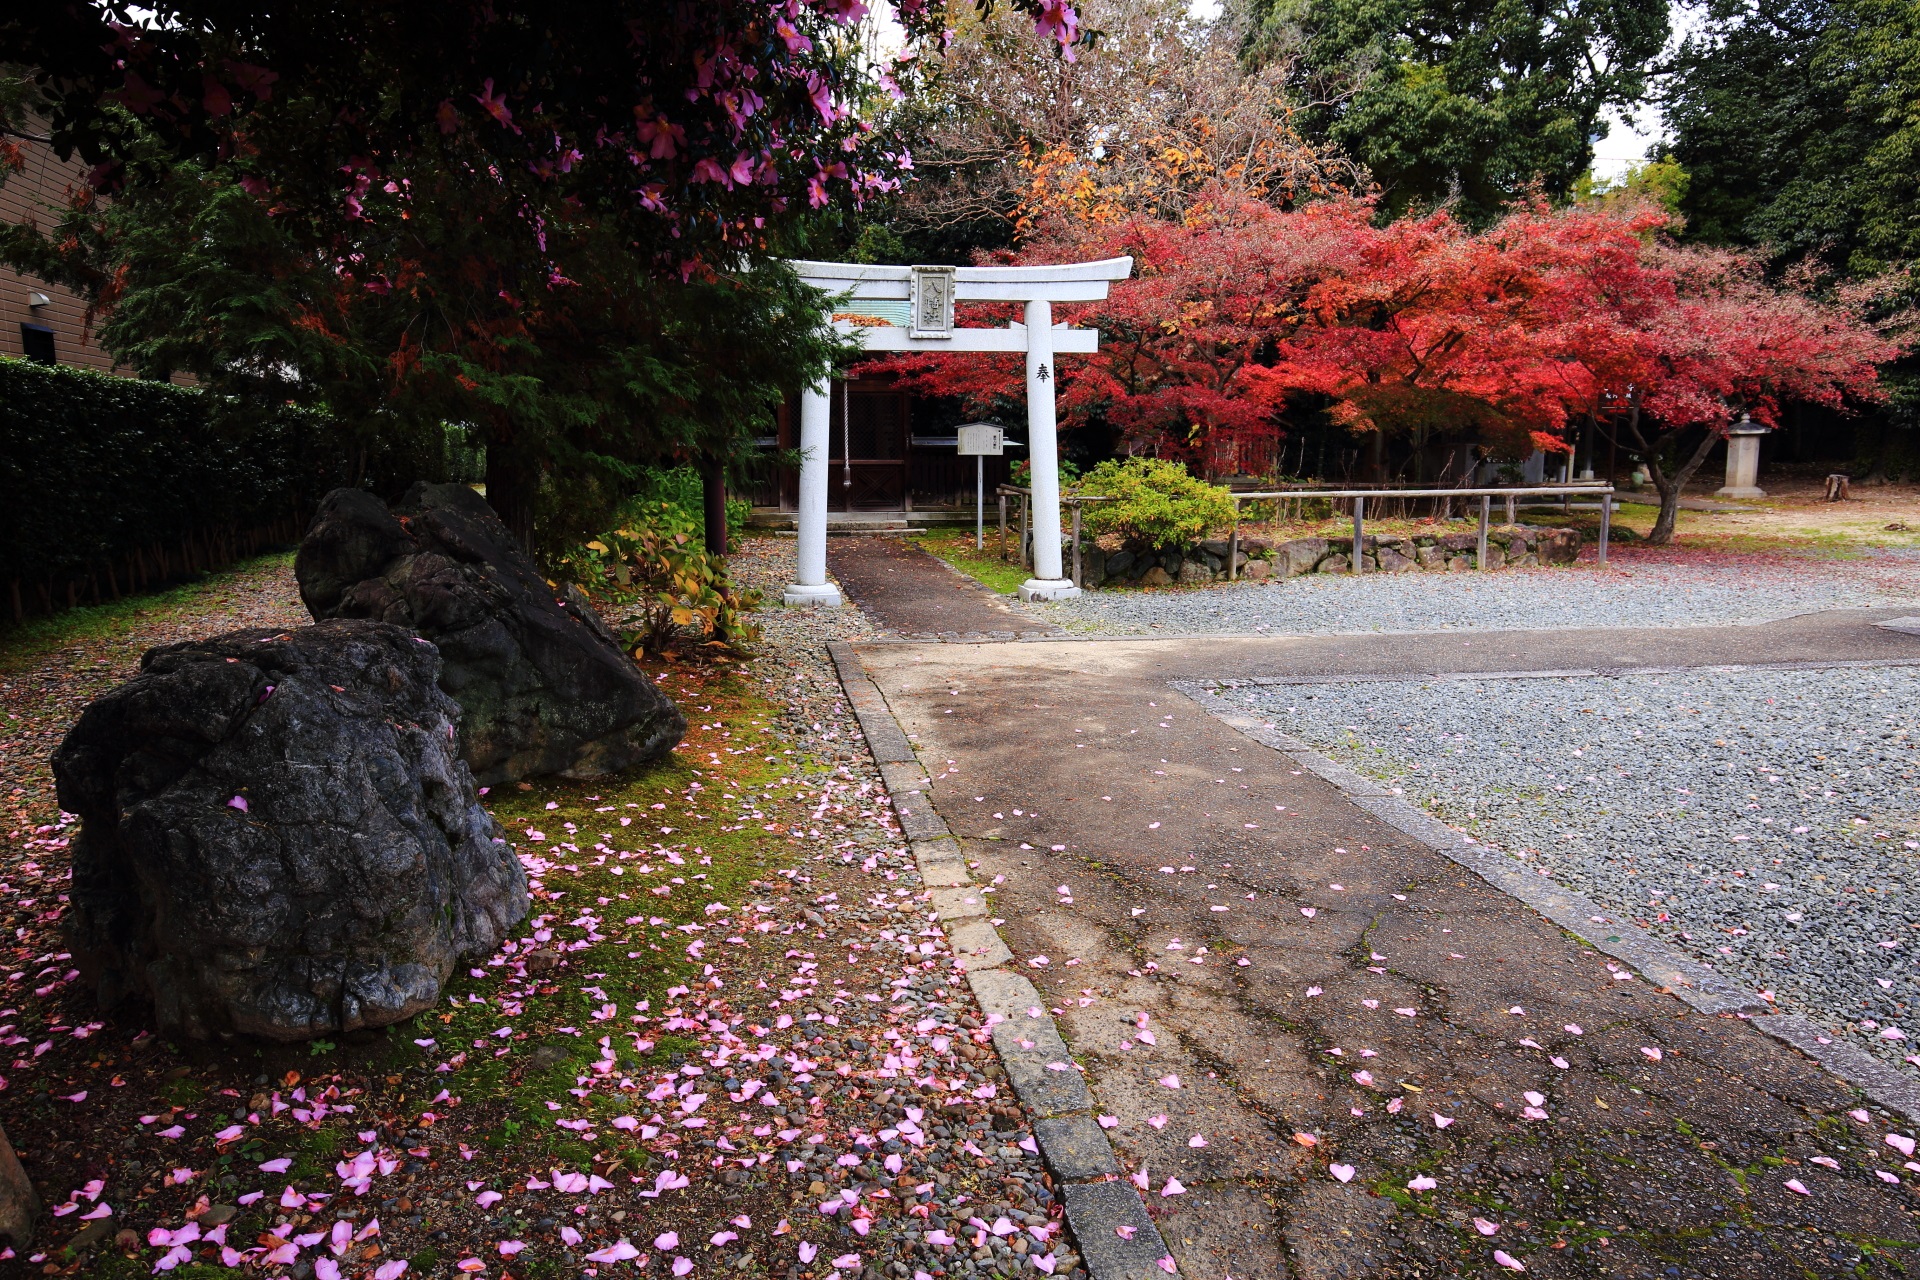 乙訓寺の鎮守八幡社と紅葉と散った山茶花の花